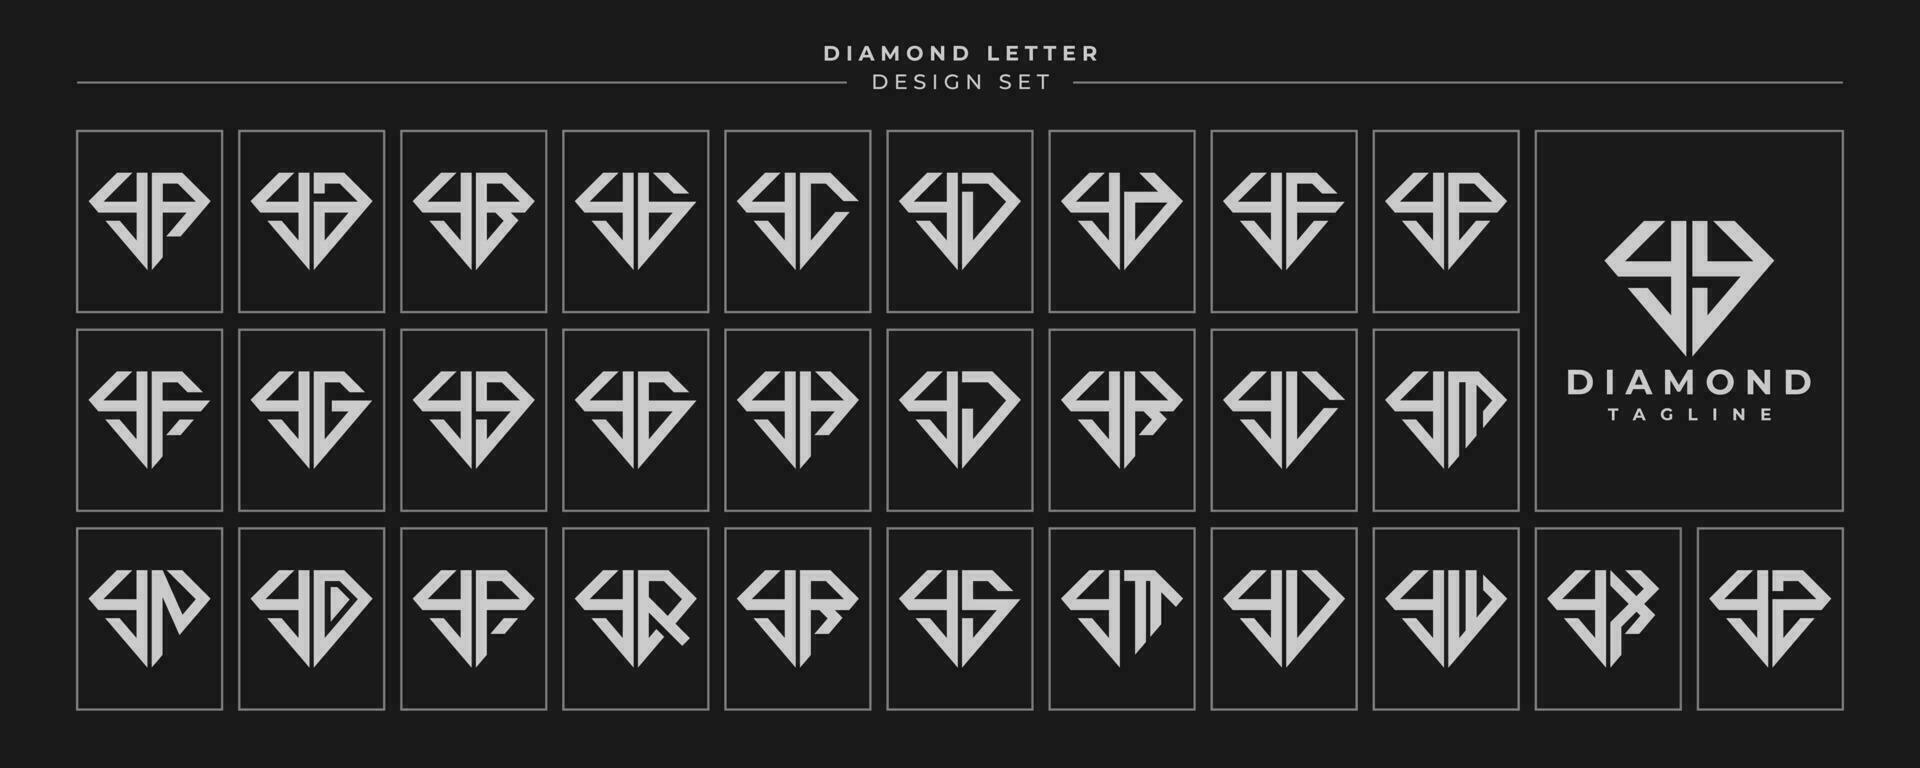 conjunto do luxo diamante cristal carta y yy logotipo Projeto vetor